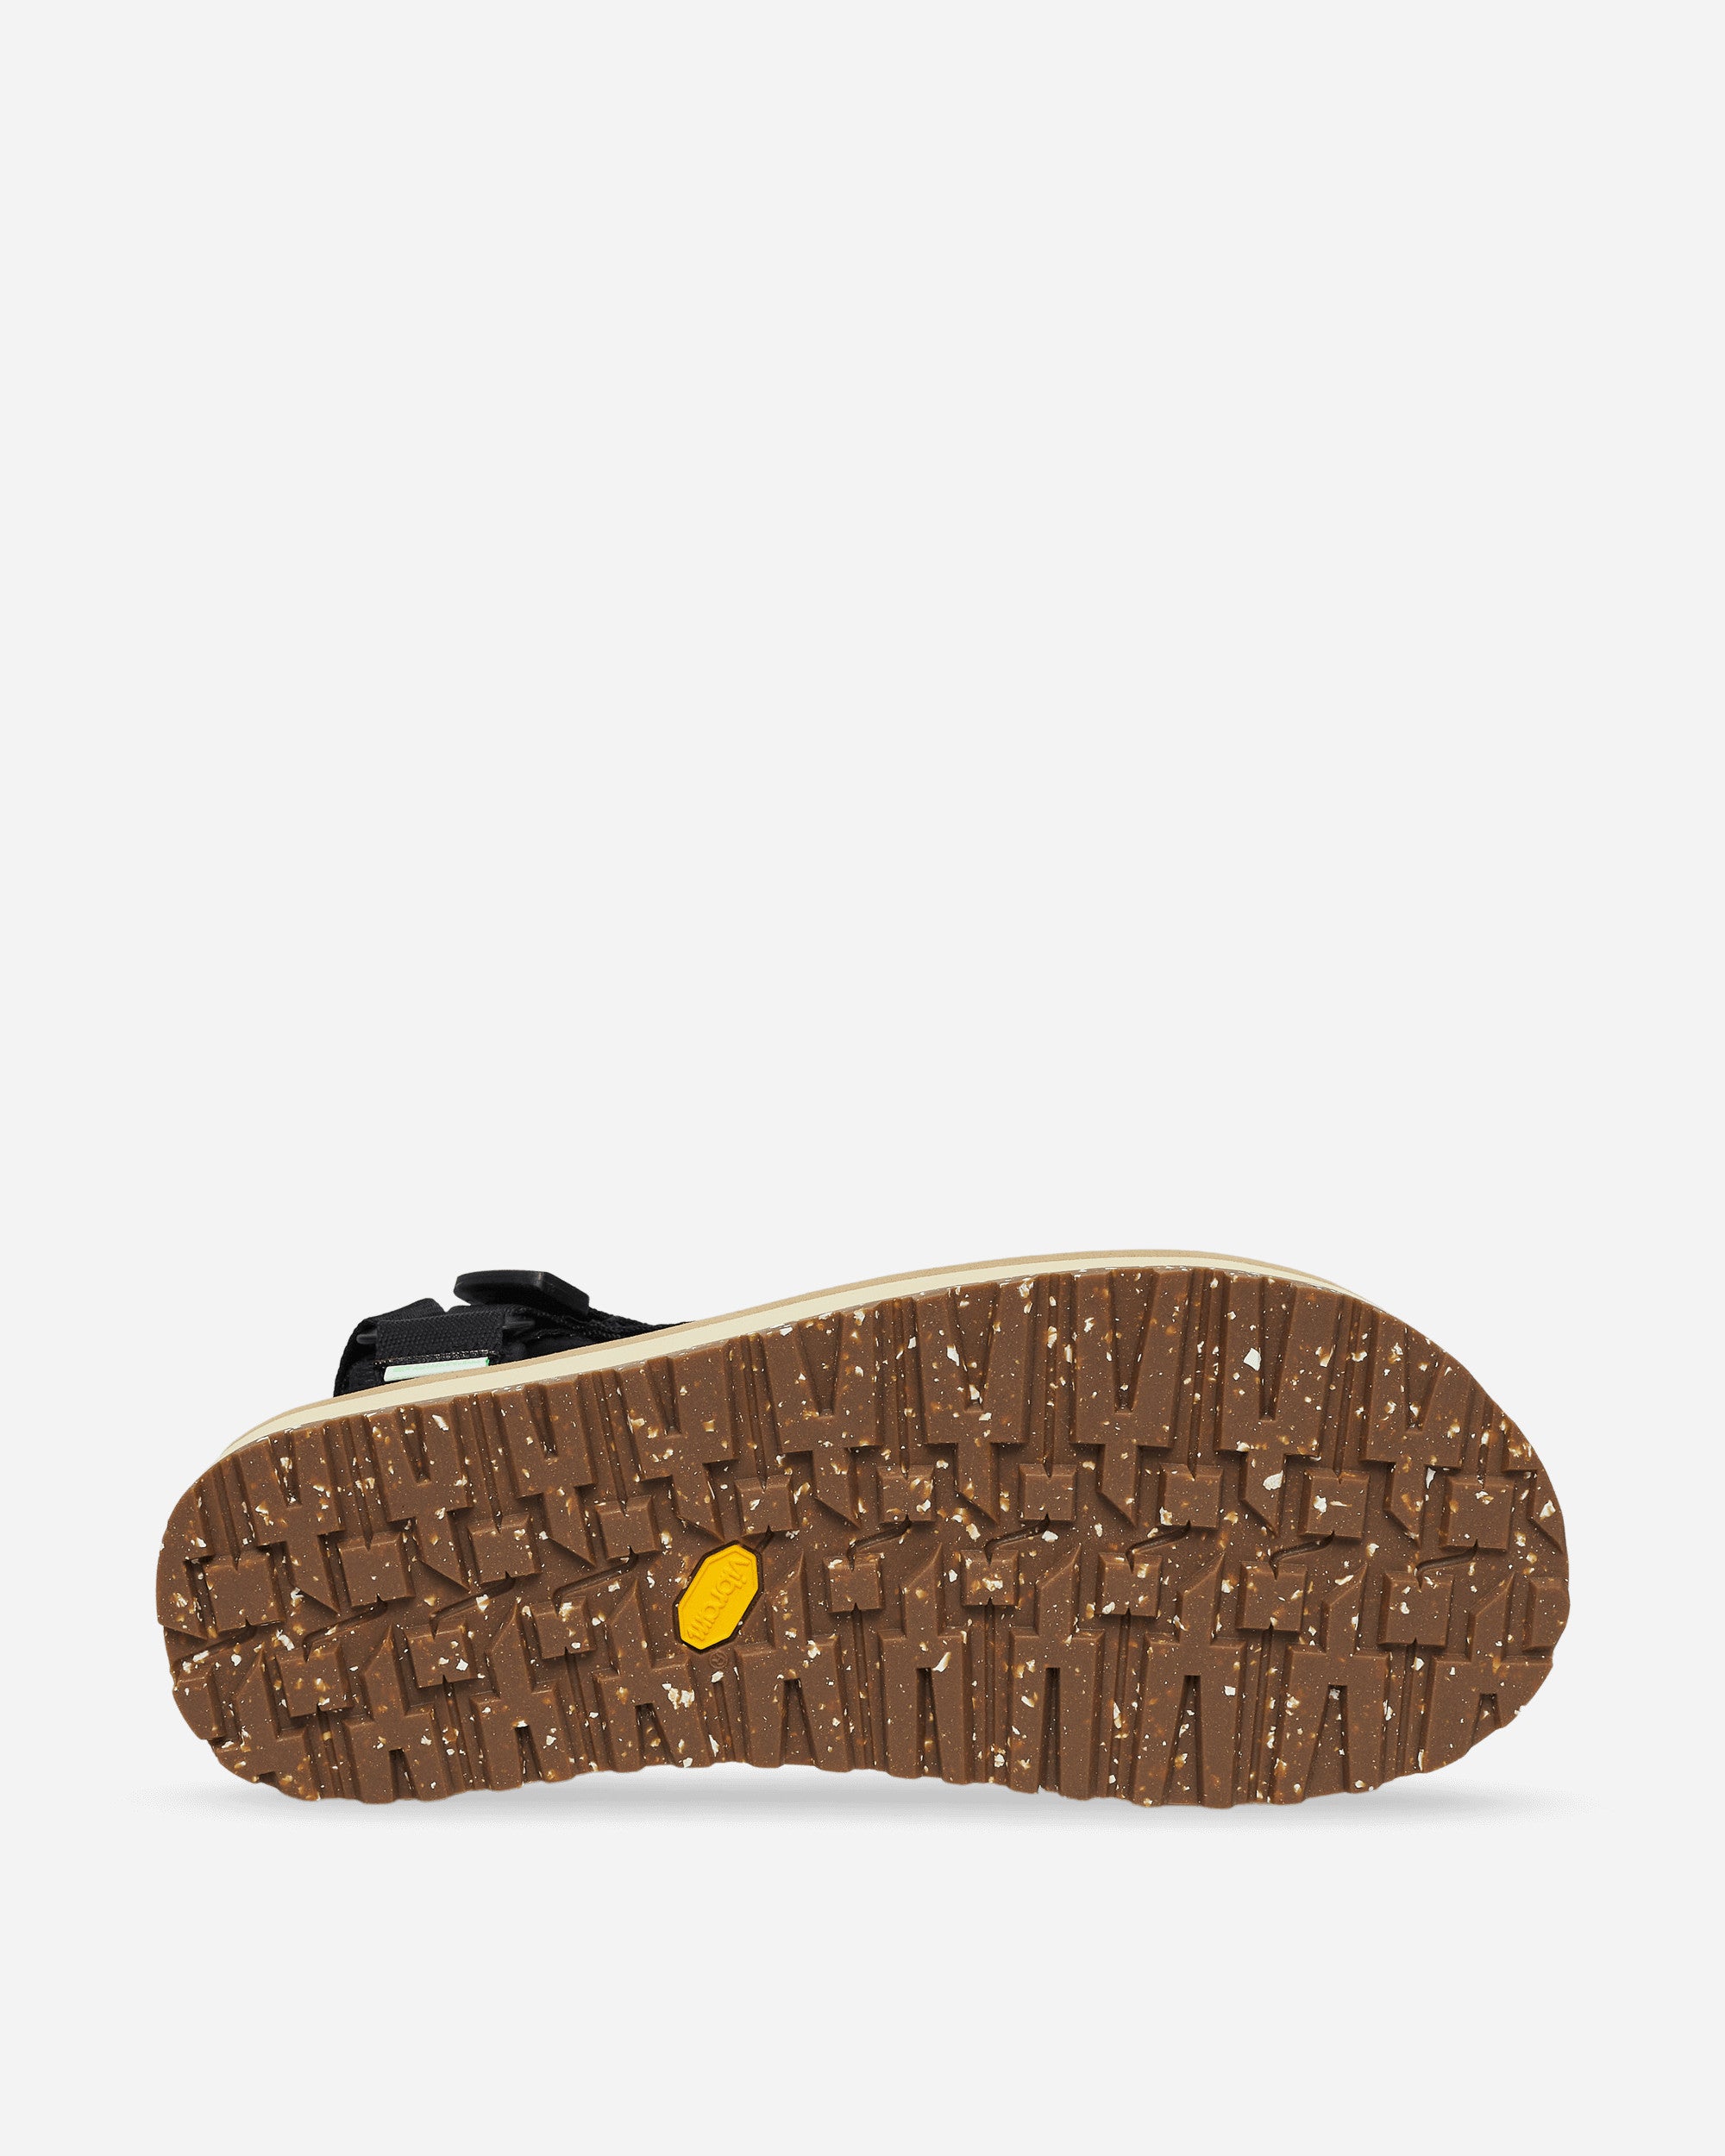 Suicoke Depa-2Cab-Eco Black X Beige Sandals and Slides Sandal OG-022-2Cab-ECO- BLB